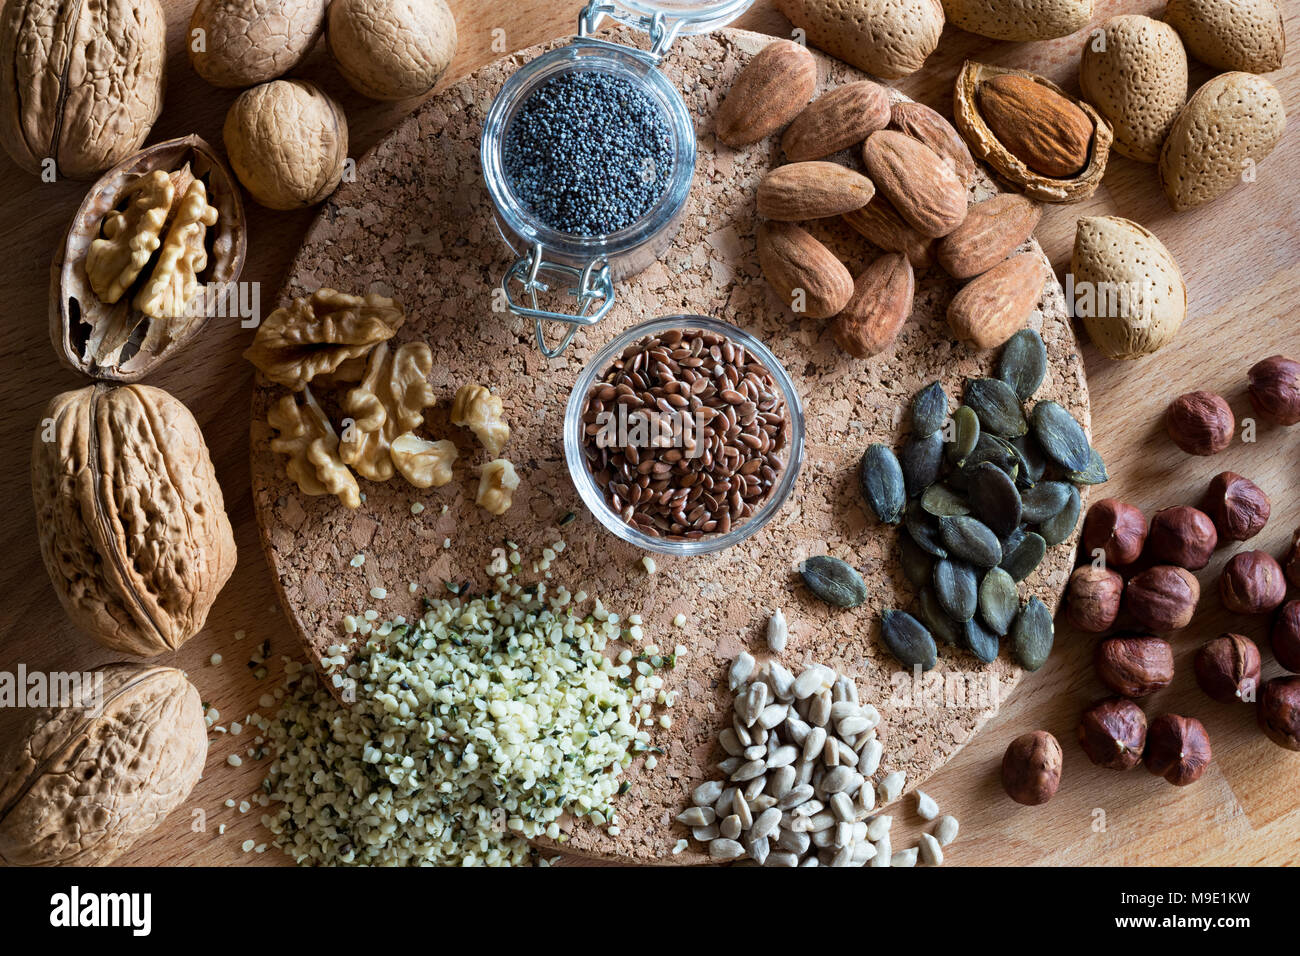 Las nueces y semillas, nueces, almendras, avellanas, semillas de lino, cáñamo, calabaza y semillas de girasol. Vista desde arriba. Foto de stock